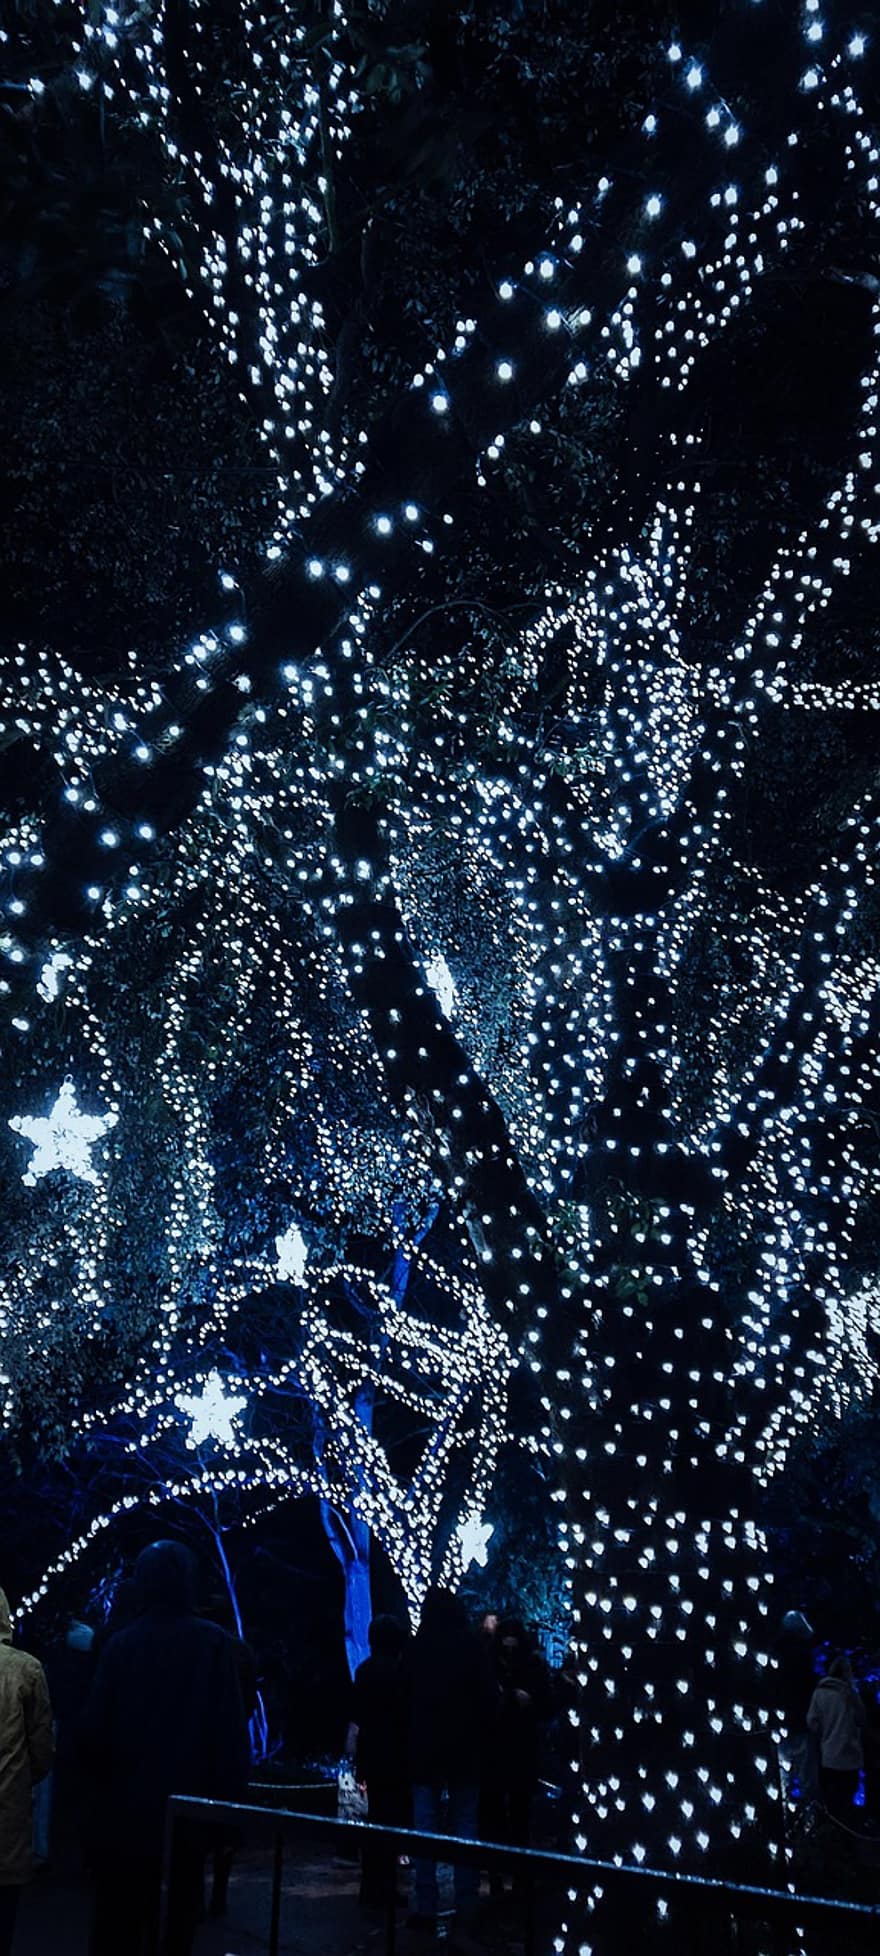 pohon, lampu peri, diterangi, lampu Natal, bintang, bintang natal, cahaya, bersinar, lampu bercahaya, dekorasi Natal, malam